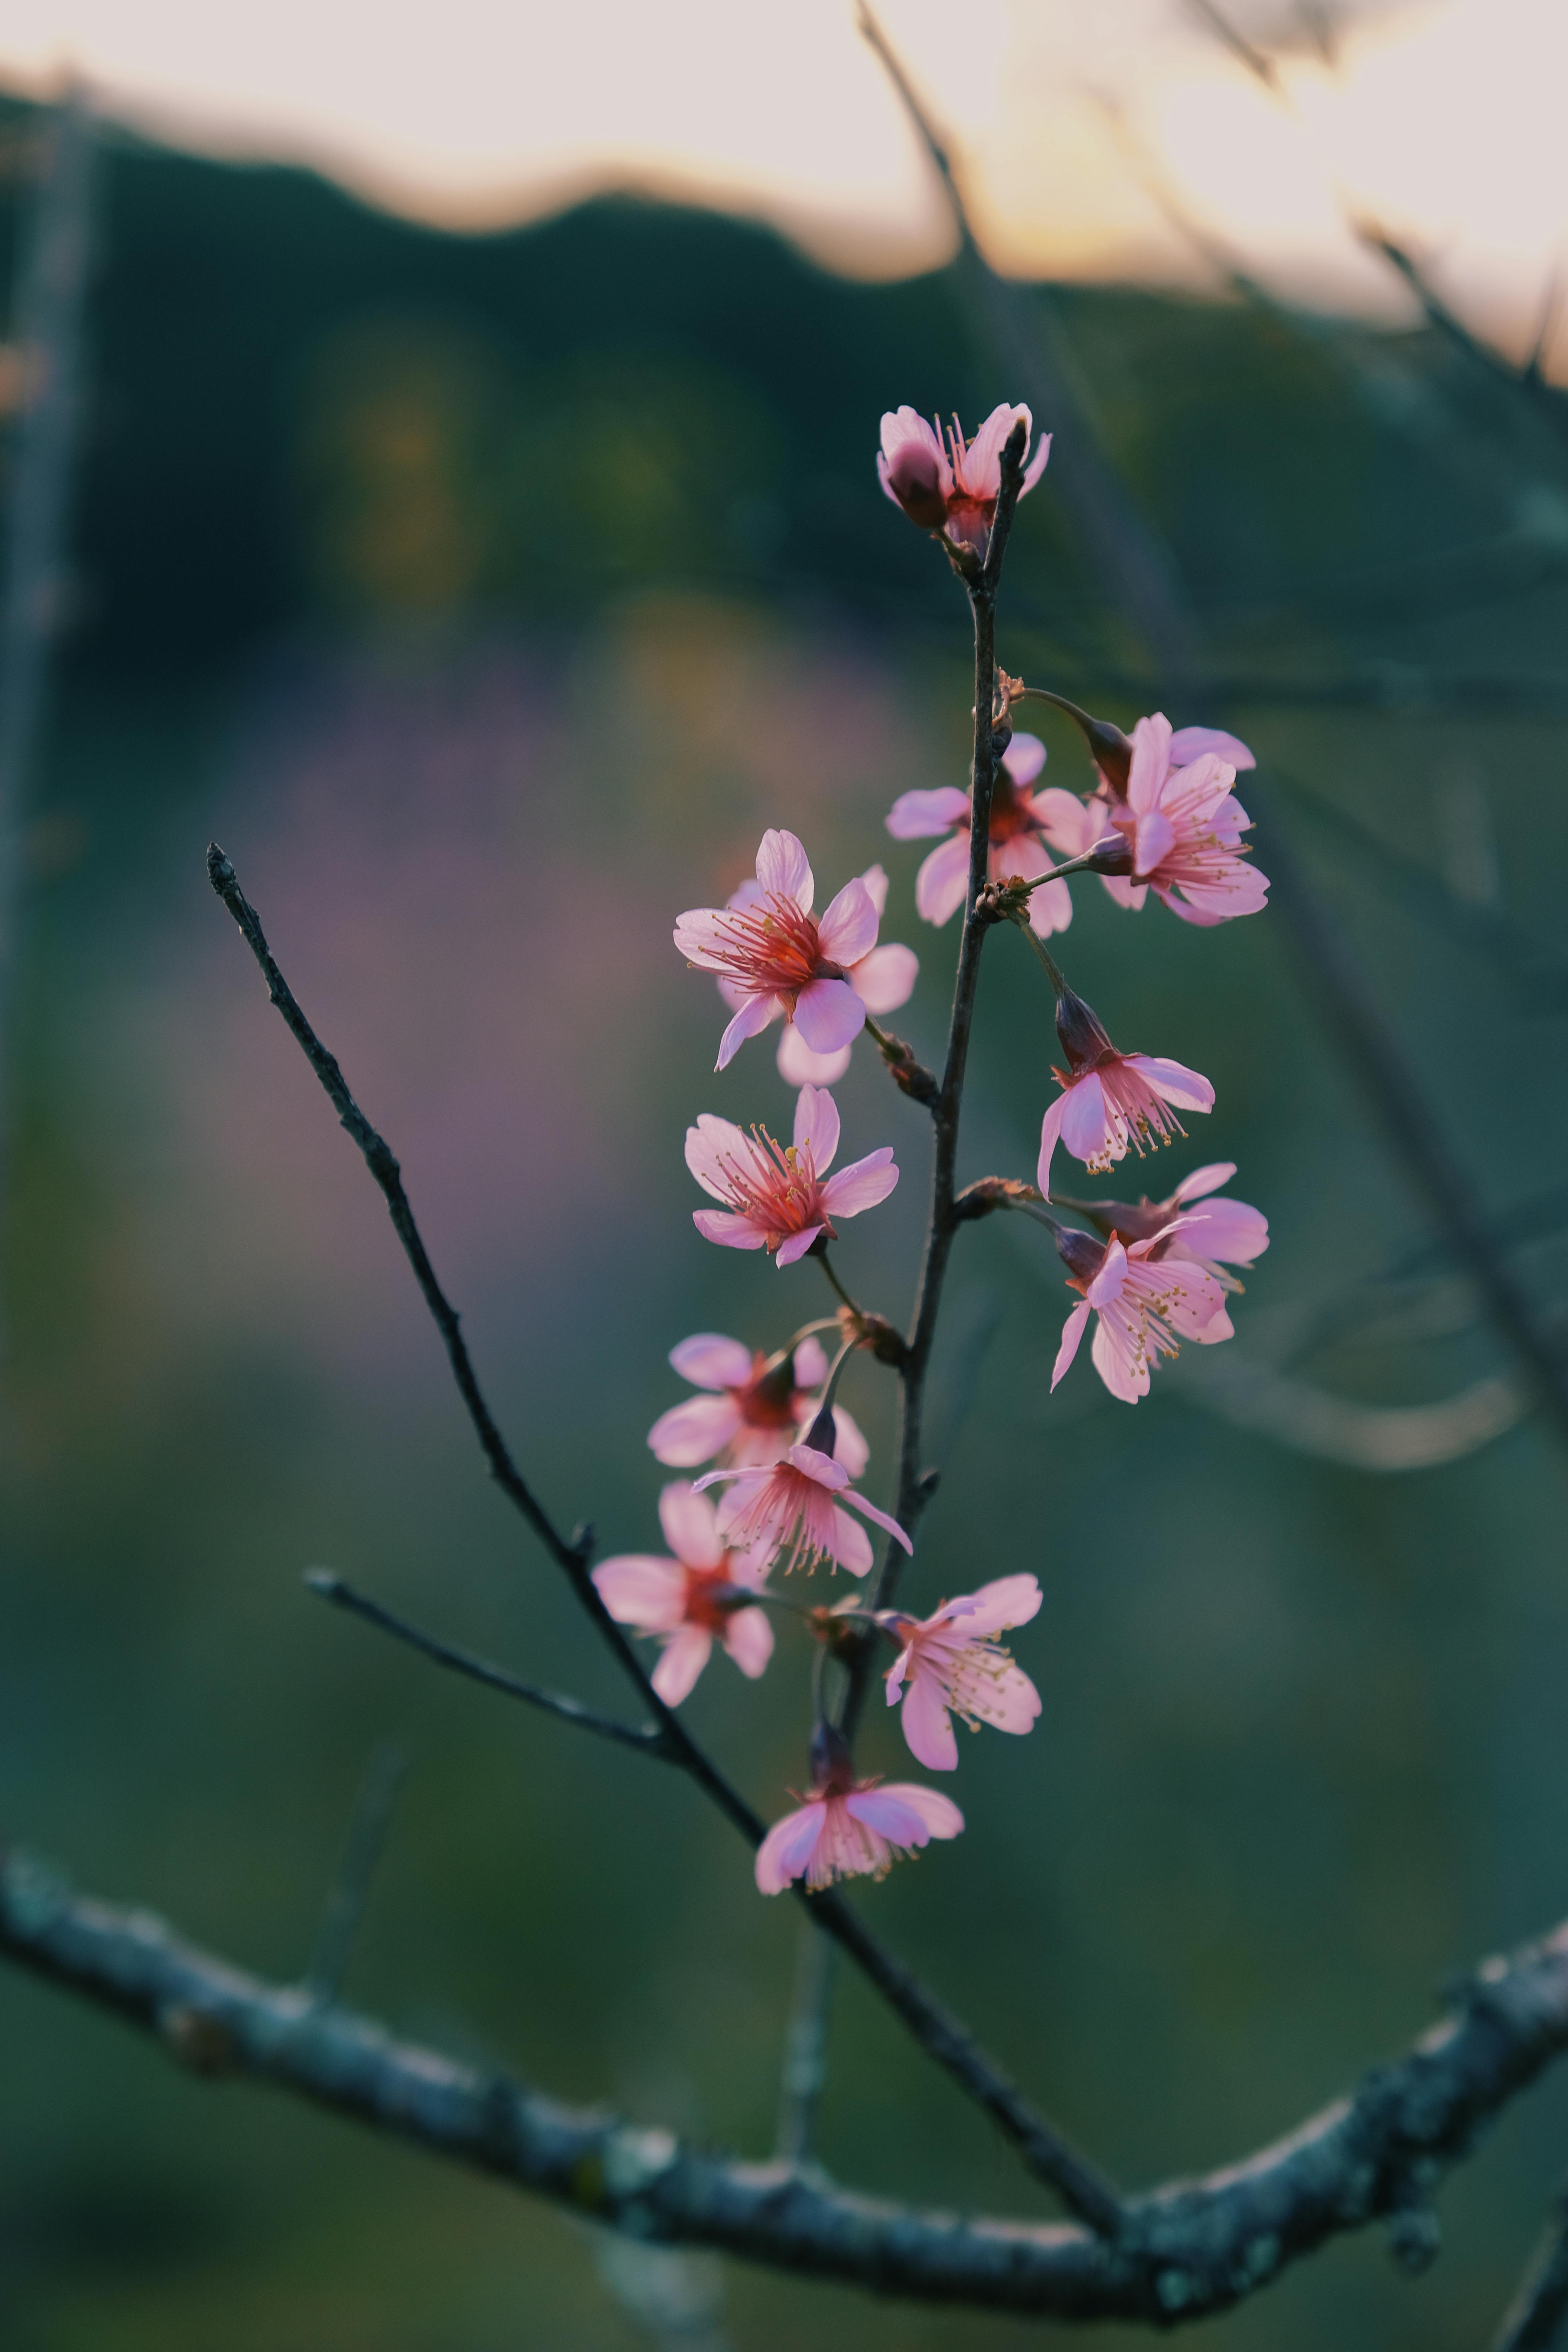 First Flowers photos: Từ trong lòng đất trồng, những bông hoa đầu tiên của mùa xuân đã chớm nở. Hãy cùng chiêm ngưỡng những hình ảnh đẹp nhất về những bông hoa đầu tiên để cảm nhận vẻ đẹp tinh khôi, thơm ngát và dịu dàng của mùa xuân.